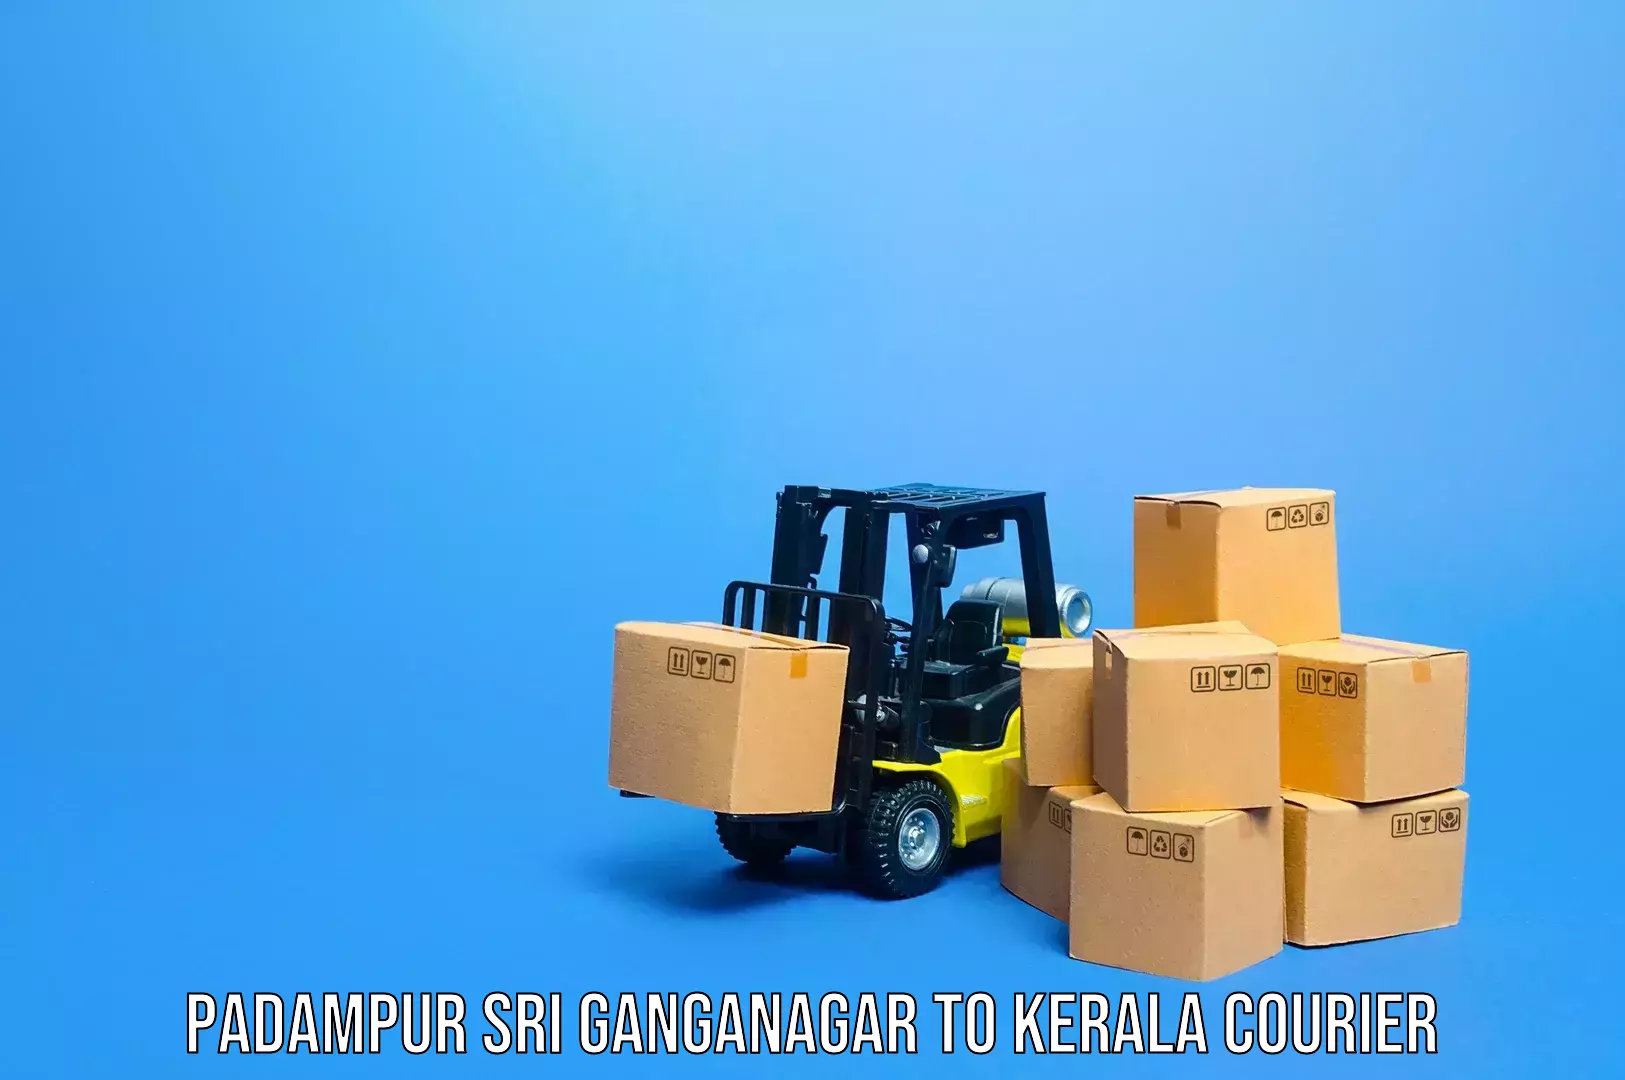 Baggage transport network in Padampur Sri Ganganagar to Haripad